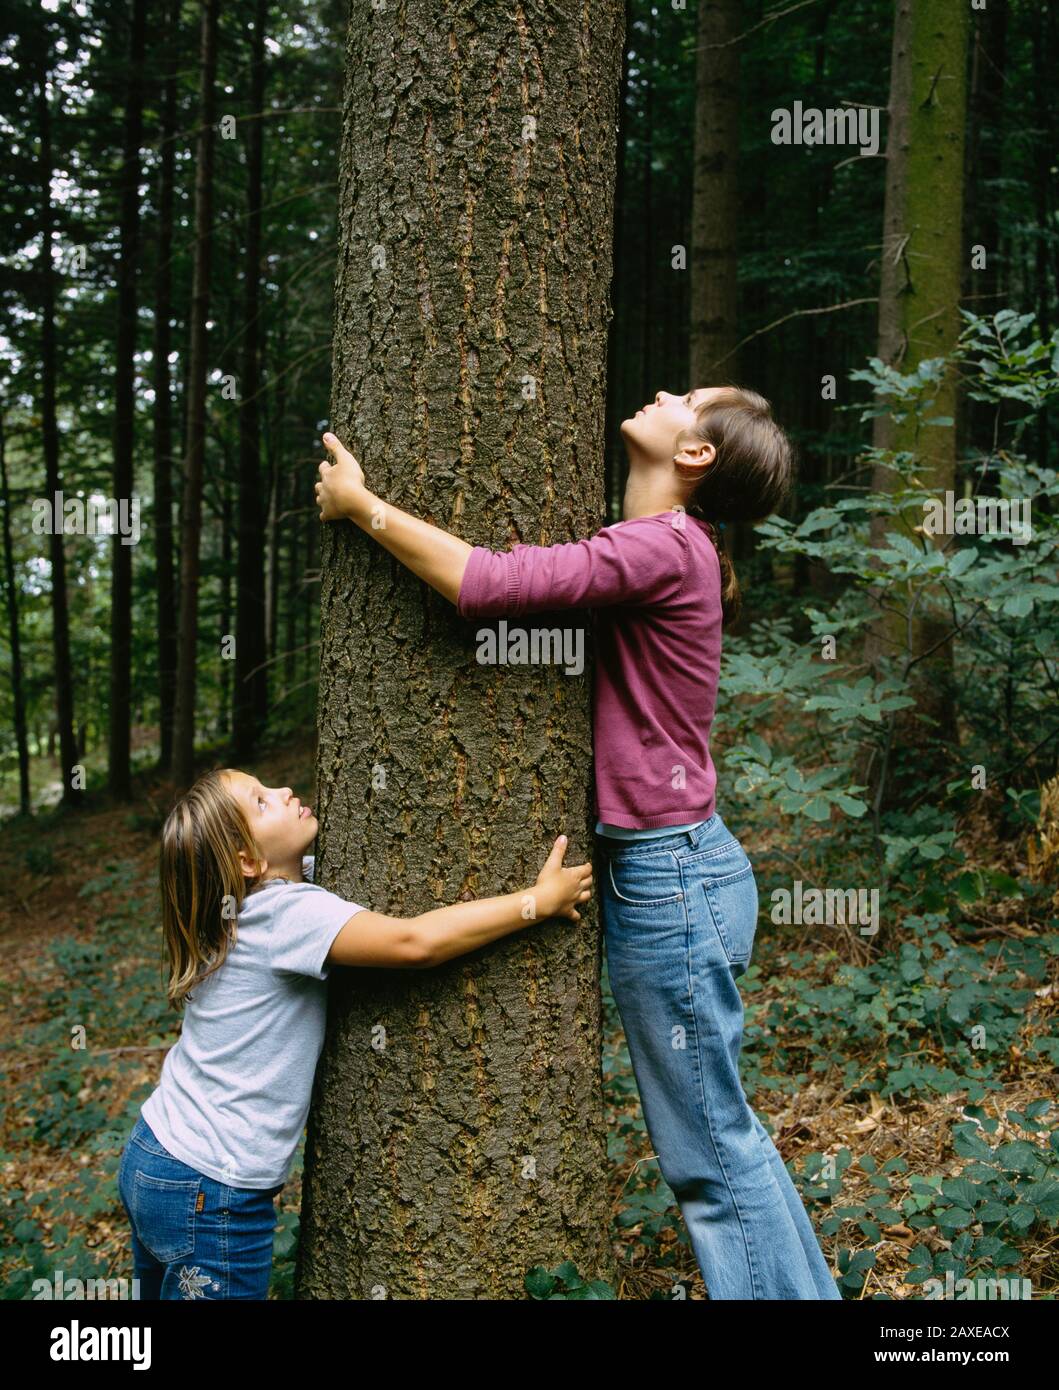 Seitenprofil eines Mädchens und eines Teenager-Mädchens, das einen Baum umarmt, Deutschland Stockfoto